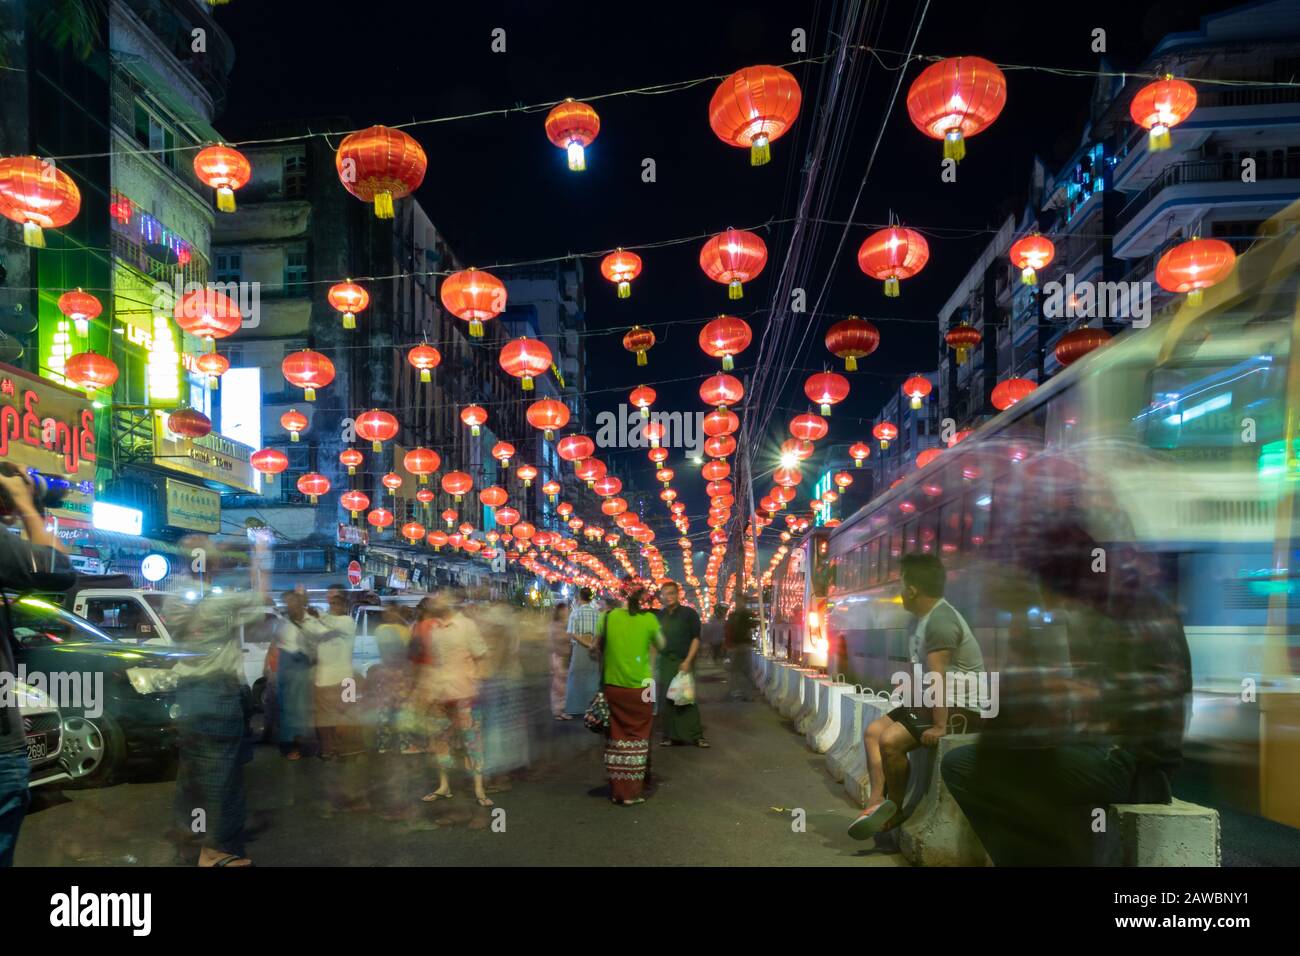 YANON, MYANMAR - 22 GENNAIO 2020: Festeggiamenti per il Capodanno cinese a Chinatown, nel centro di Yangon. Foto Stock